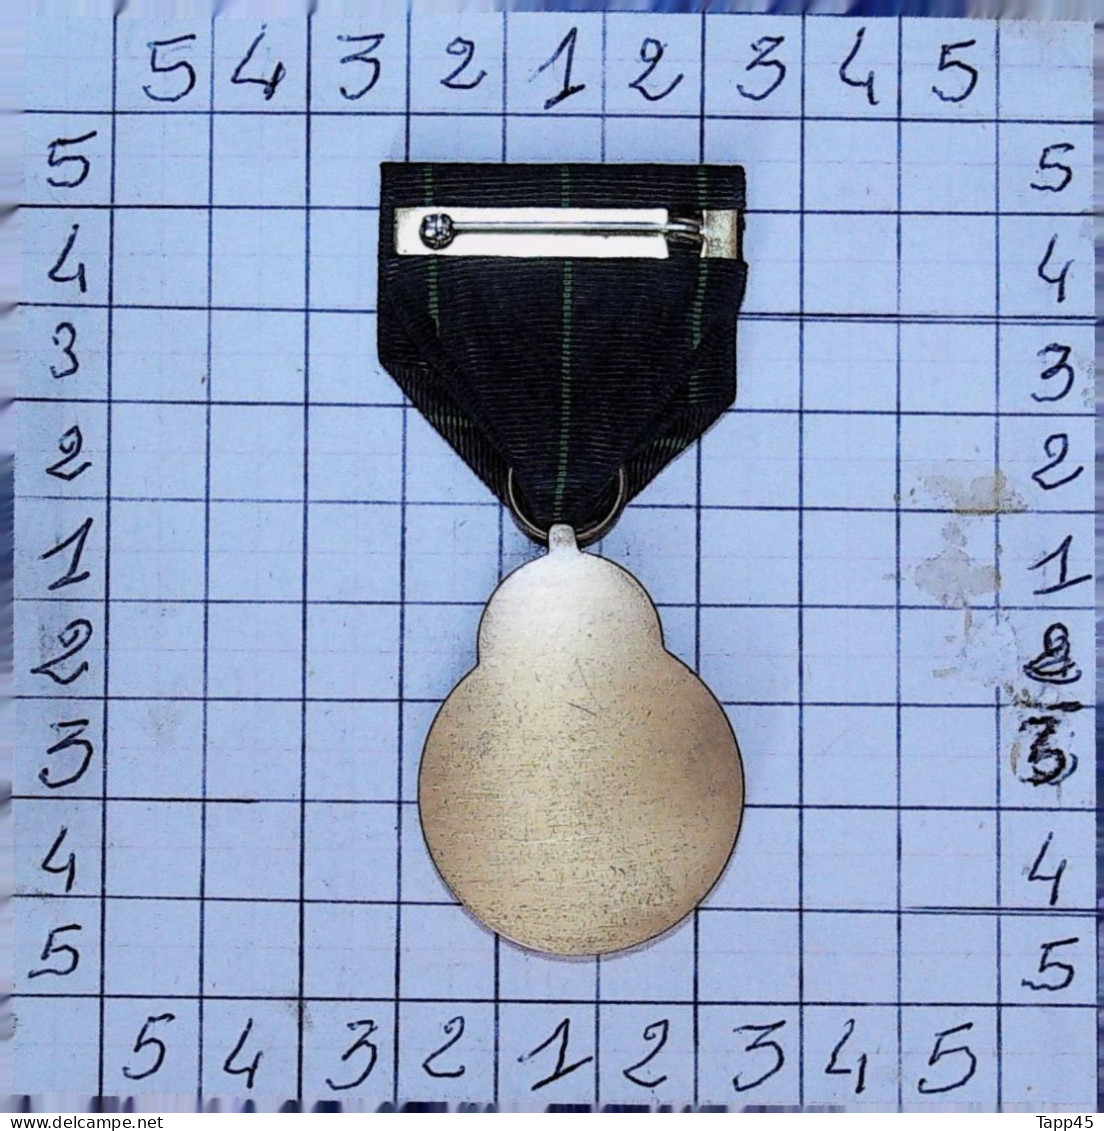 Médaille de carabinier expert de la Marine > Navy Expert Rifleman Medal >1969> Réf:Cl USA P 1/2